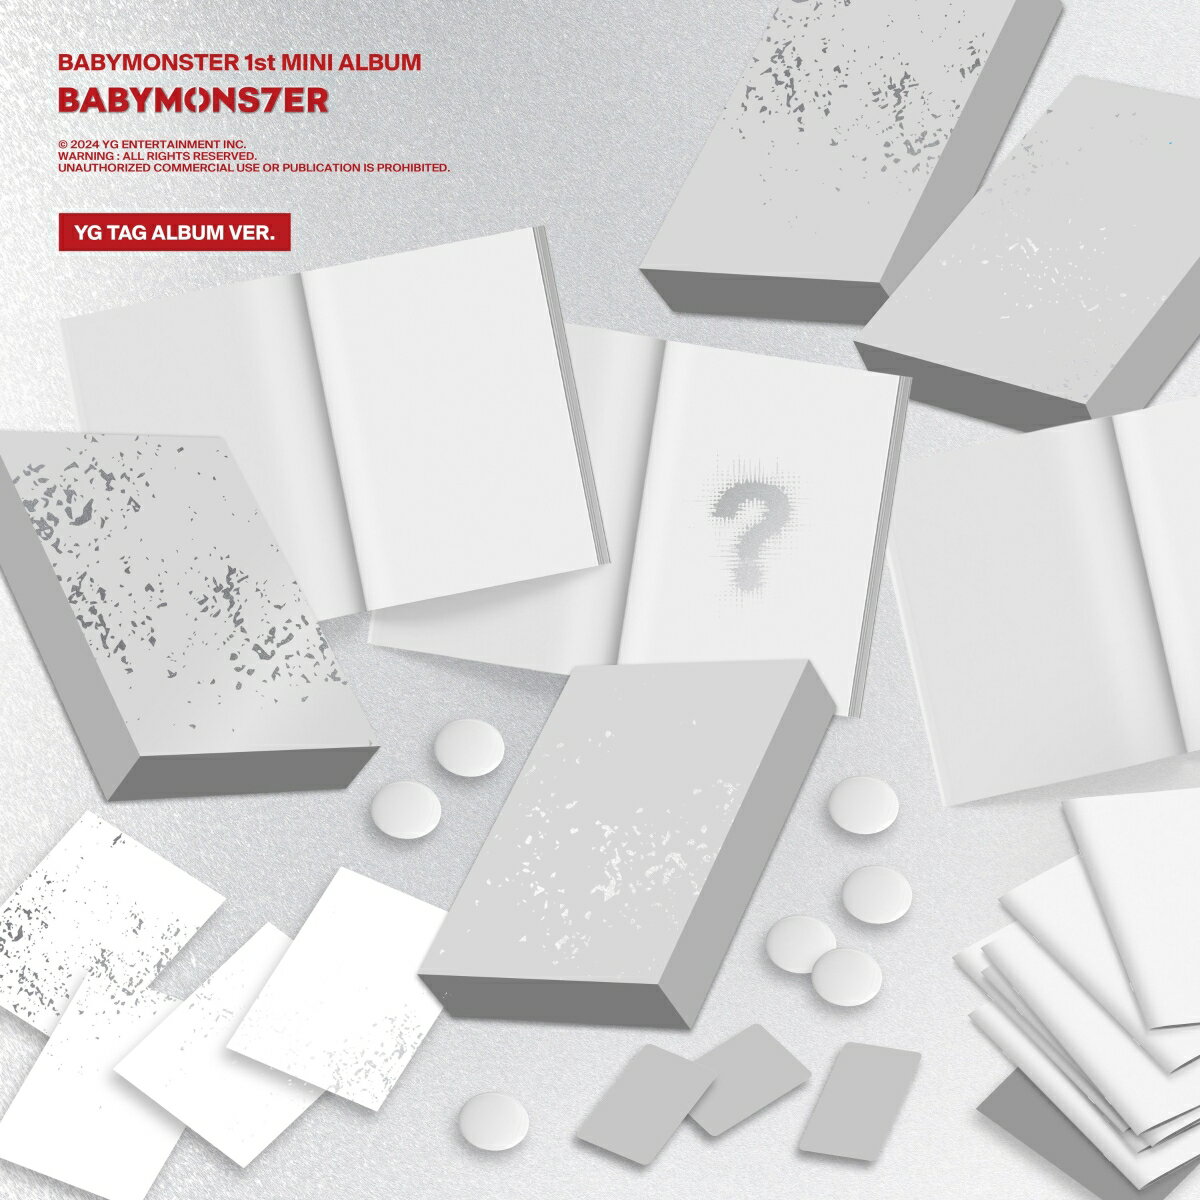 【楽天ブックス限定先着特典】【輸入盤】BABYMONSTER 1st MINI ALBUM [BABYMONS7ER] YG TAG ALBUM VER. ※7バージョン (7枚セット)(オリジナルL判ブロマイド(Type-B絵柄 / 全7種1セット))